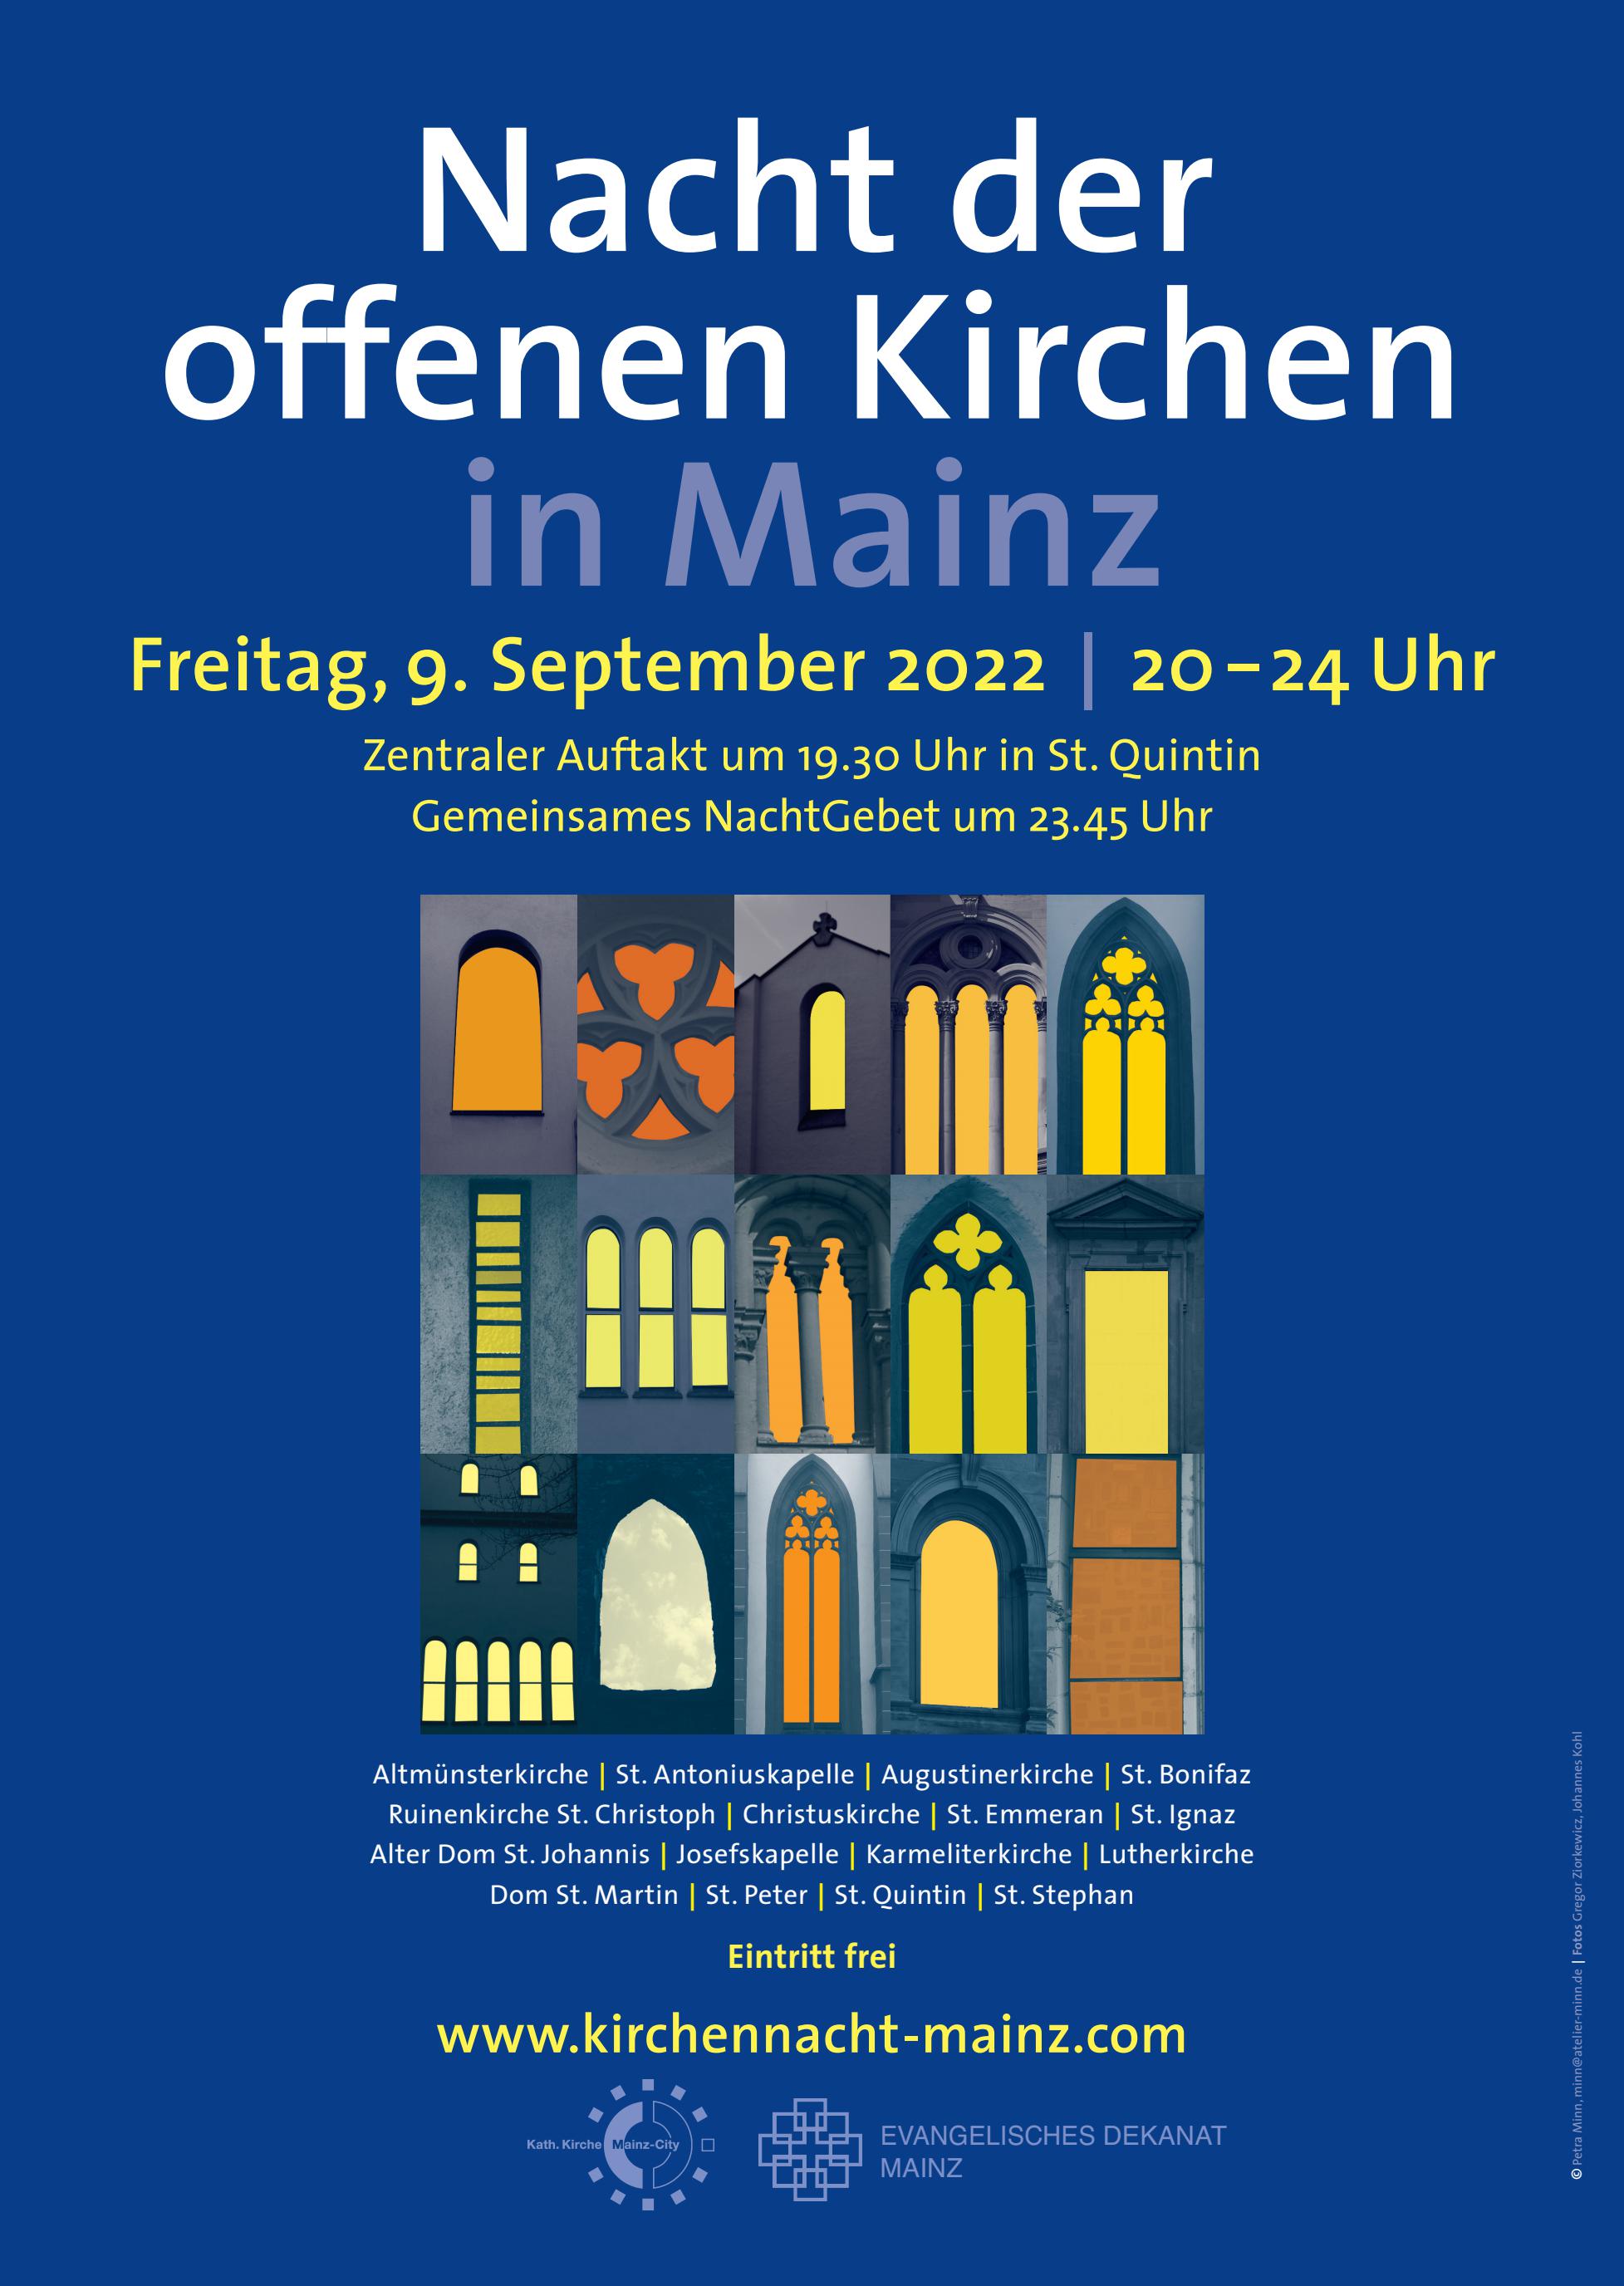 Plakat Nacht der offenen Kirchen Mainz 2022 (c) kirchennacht-mainz.com